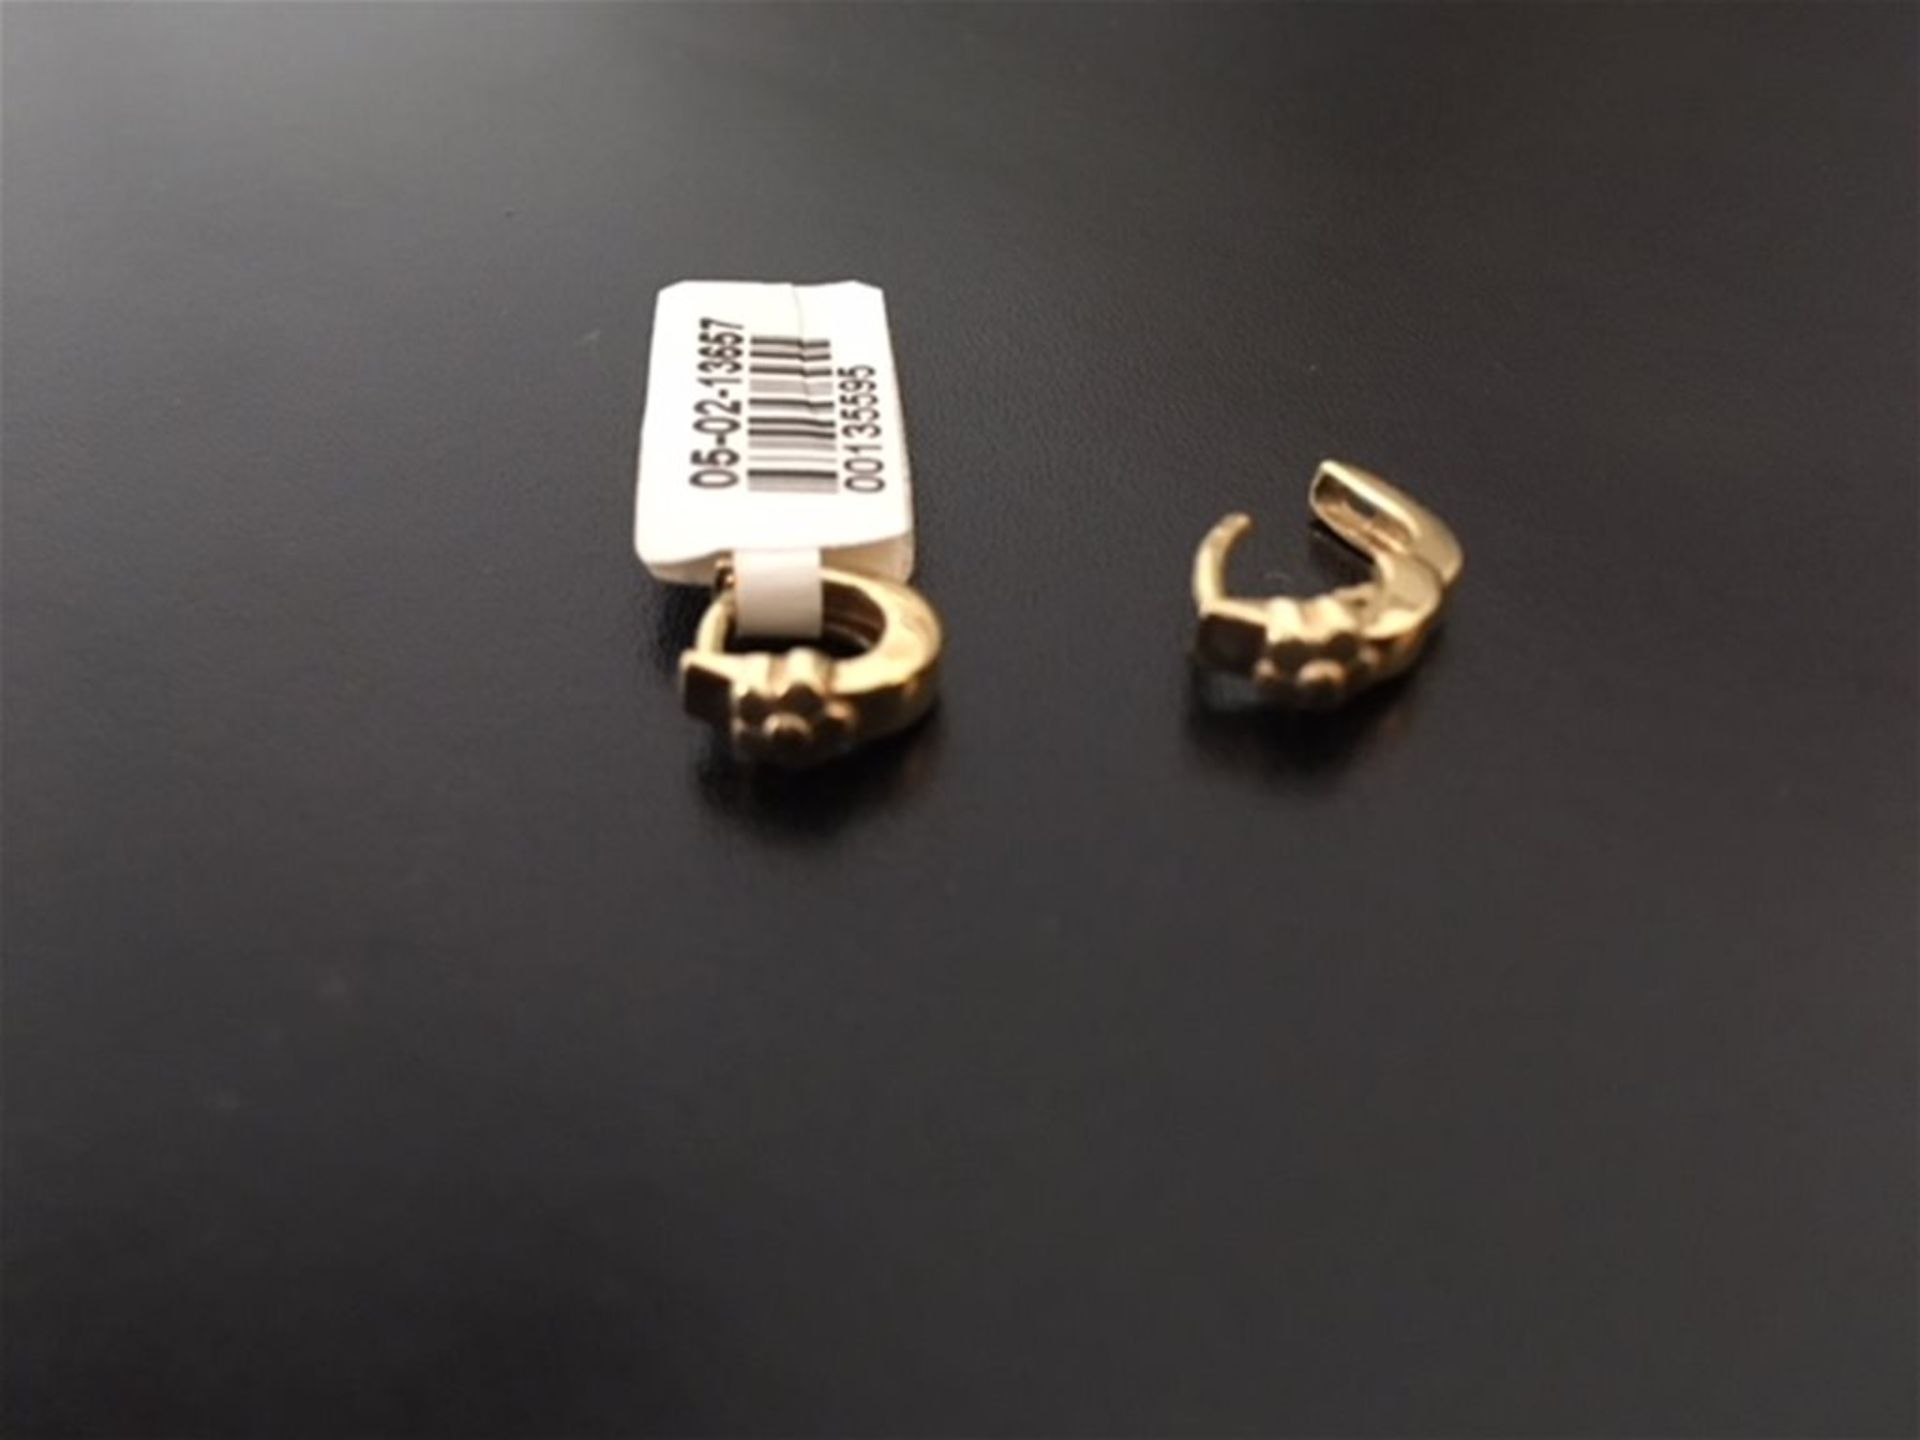 9ct gold earrings